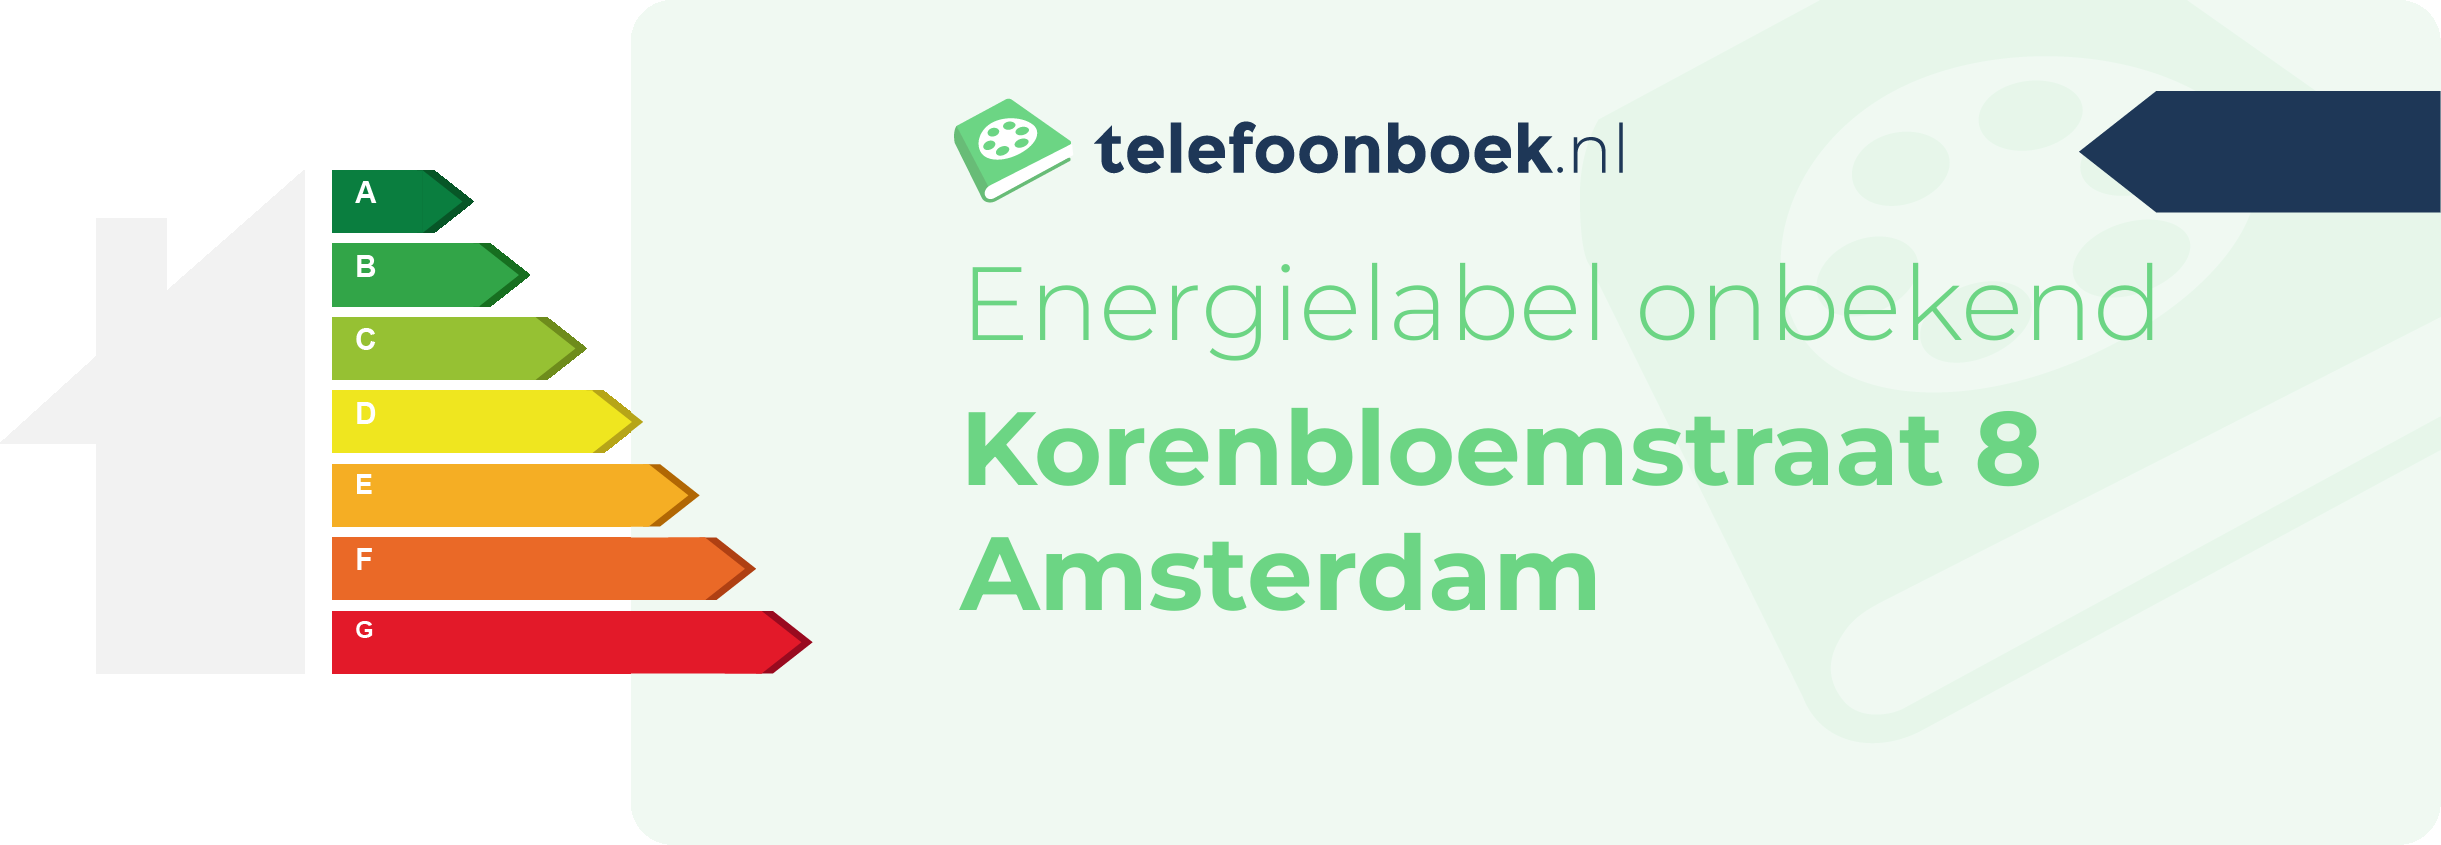 Energielabel Korenbloemstraat 8 Amsterdam